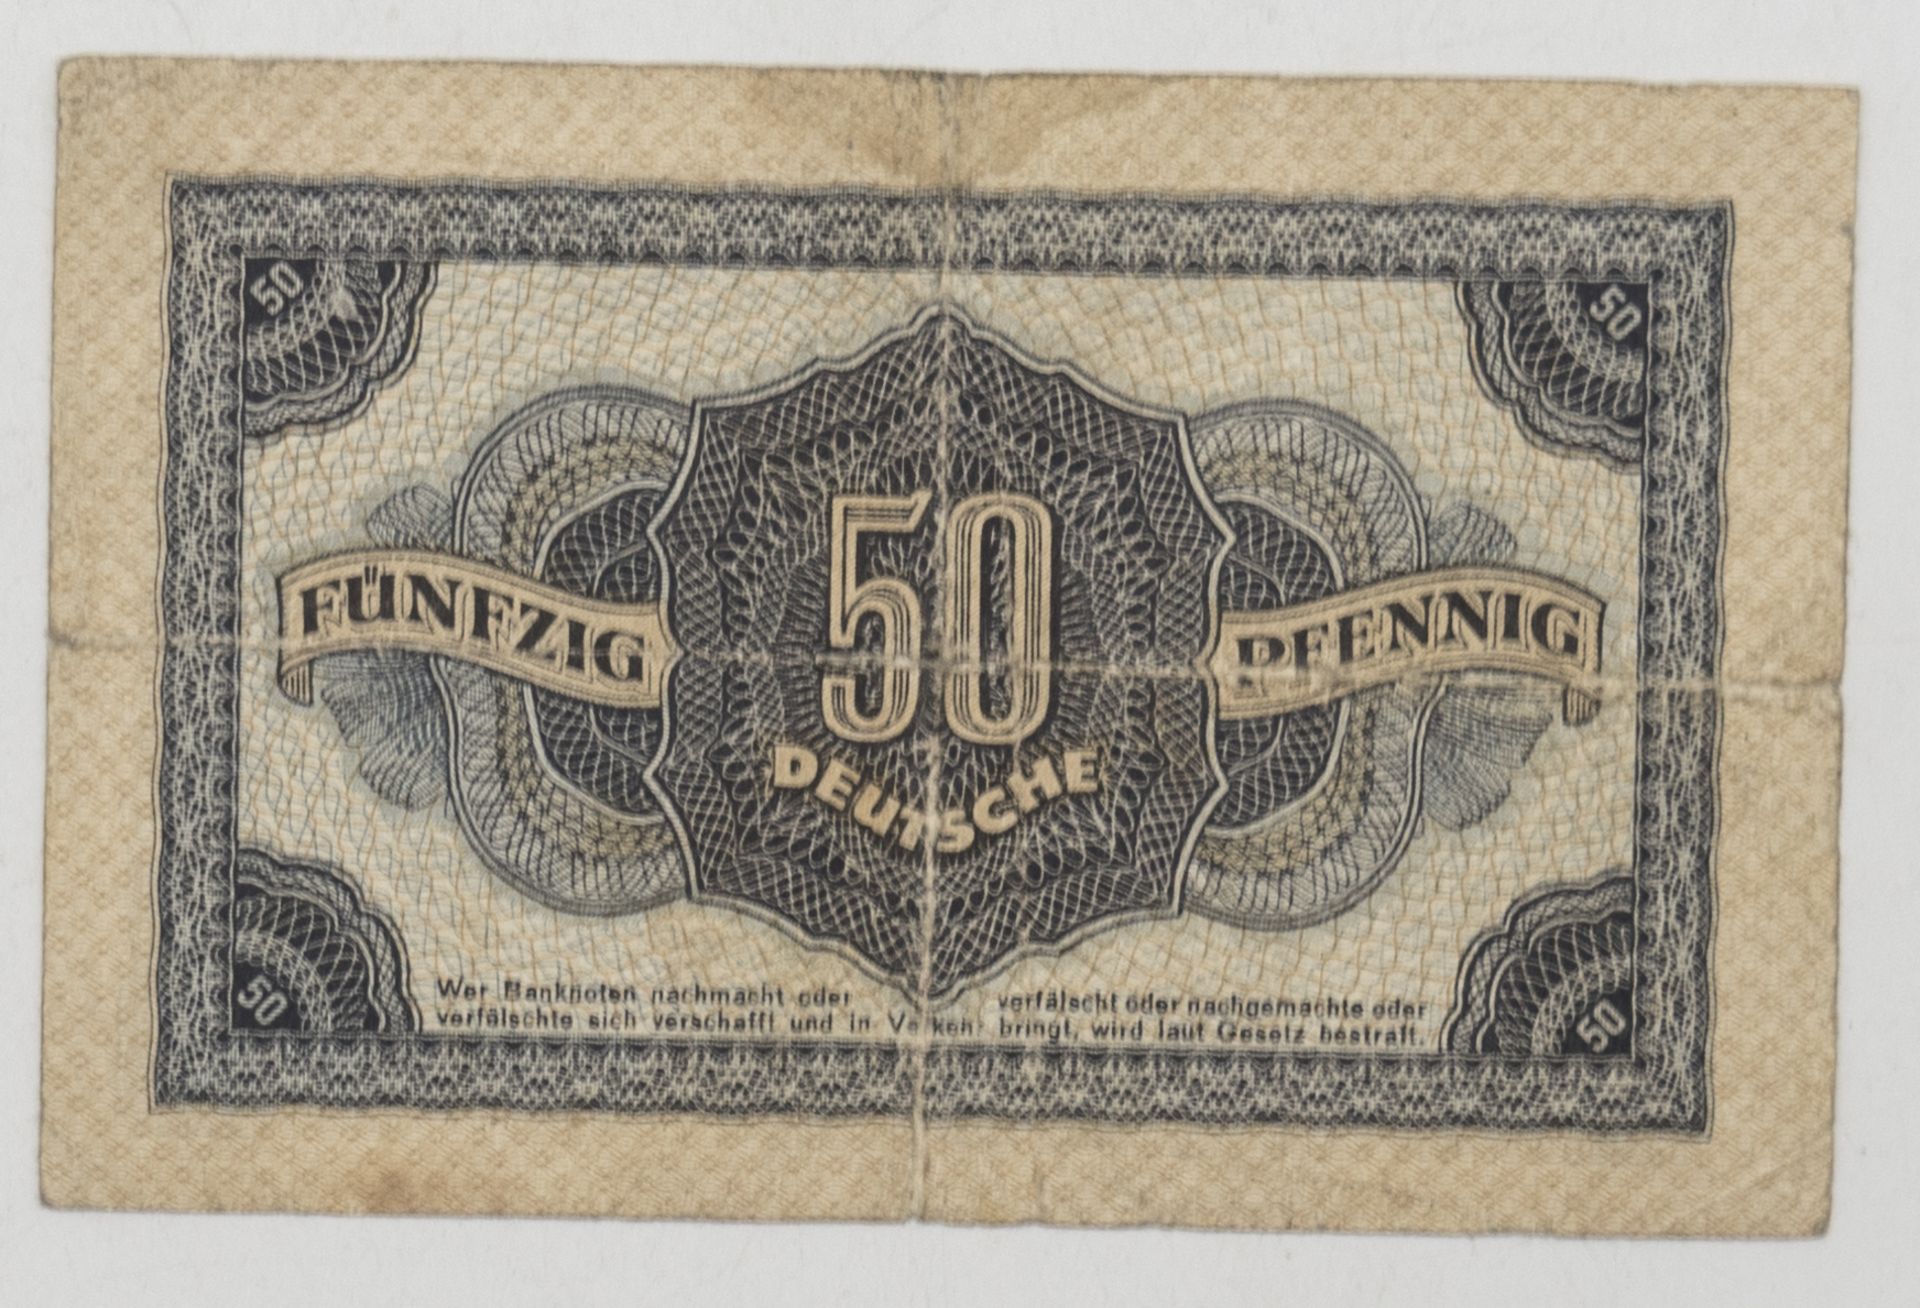 DDR 1948, 50 Pfennig - Geldschein. Ro.: 339 b. Serie EK. Erhaltung: ss. - Bild 2 aus 2